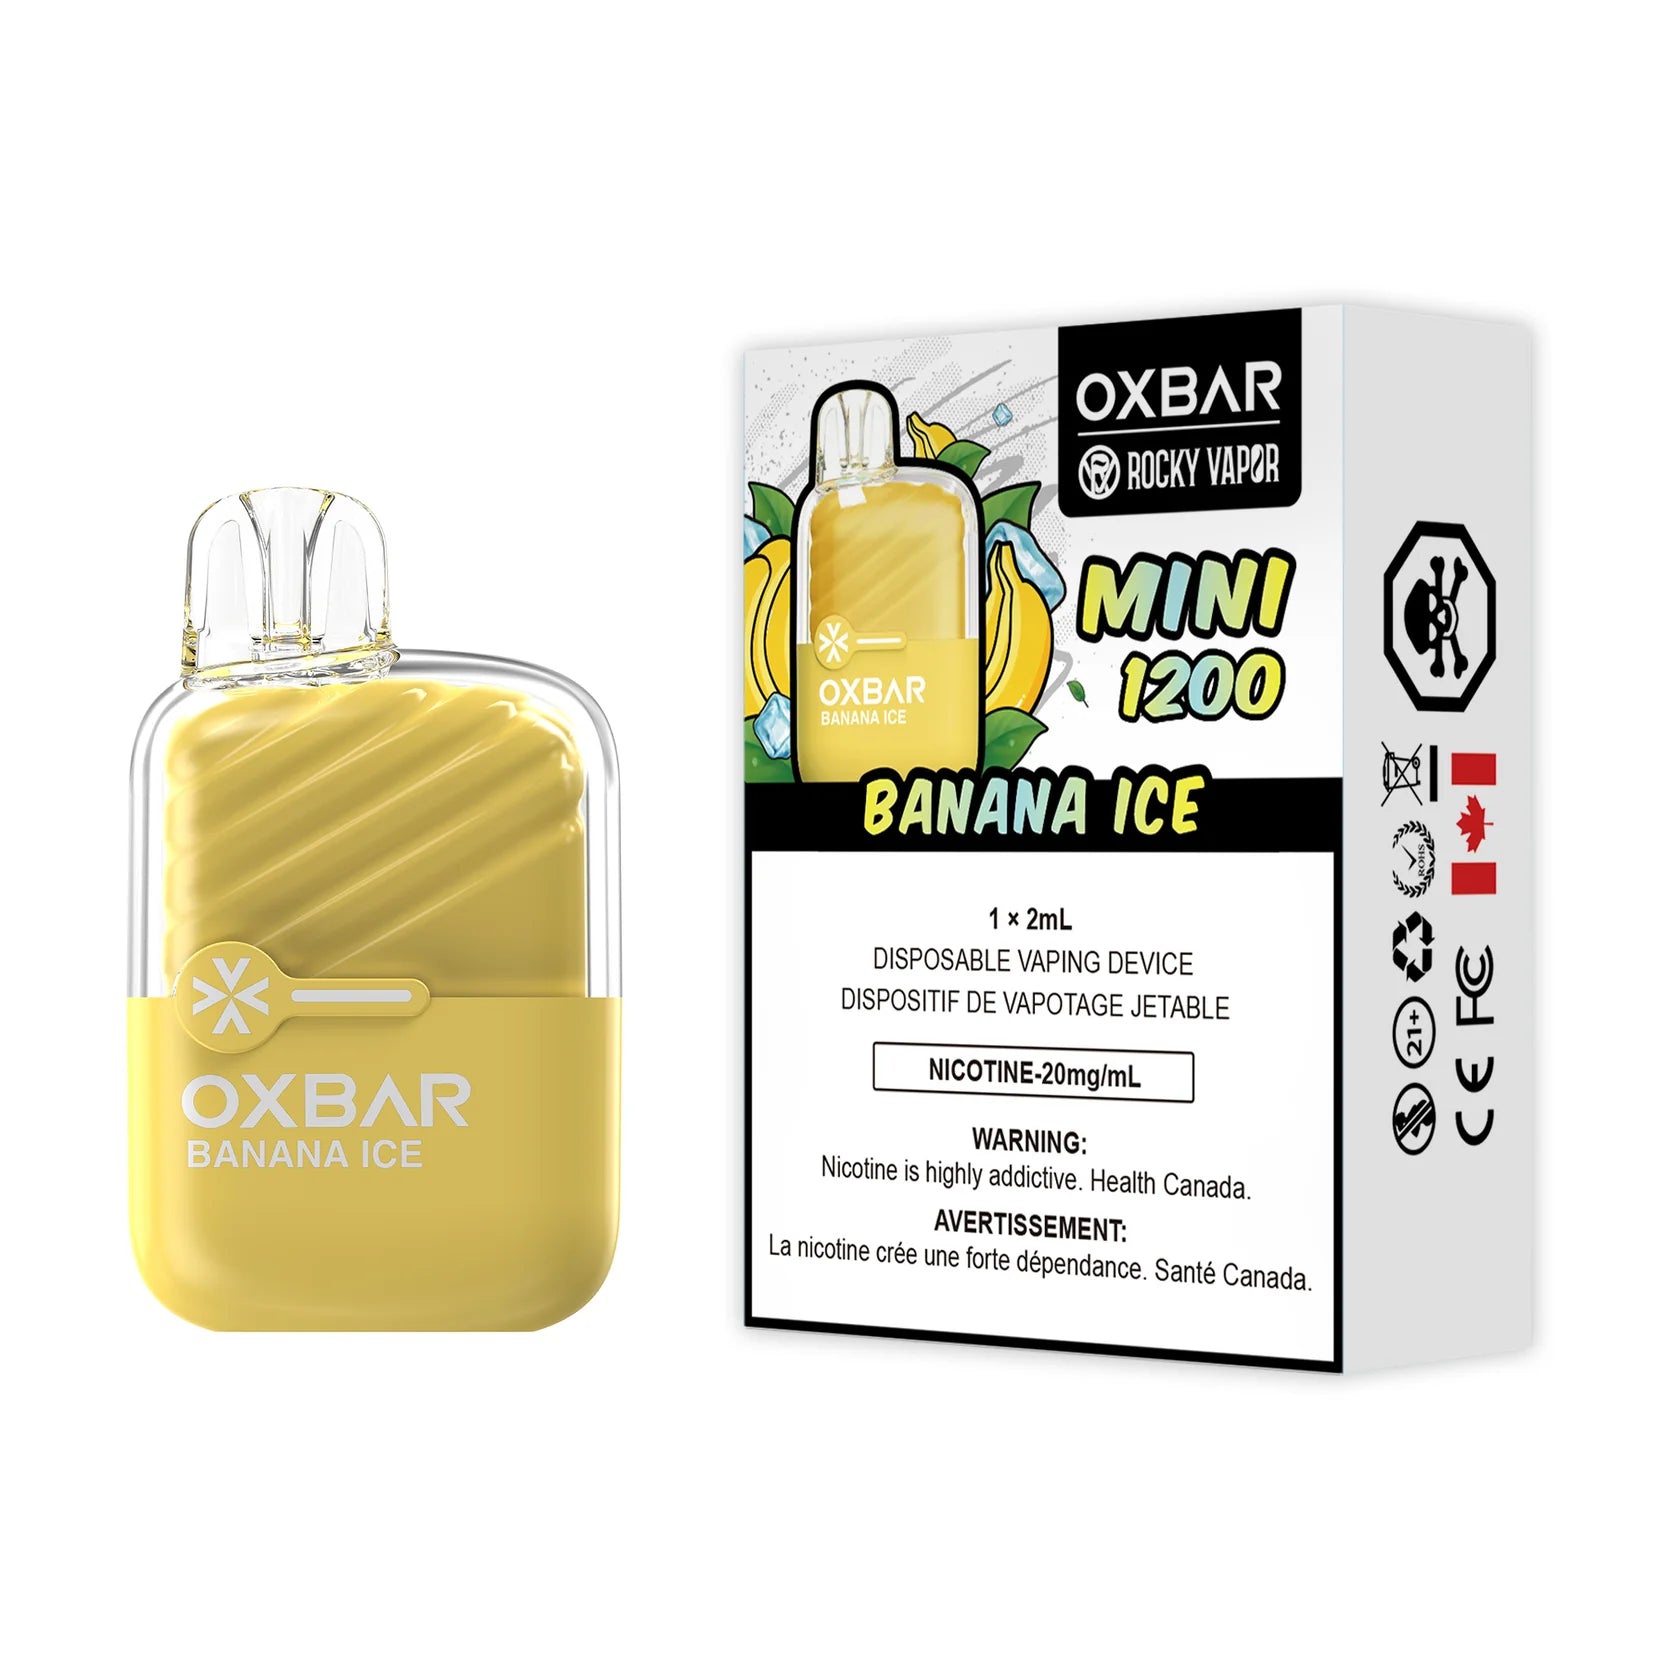 Oxbar Mini 1200 Puffs